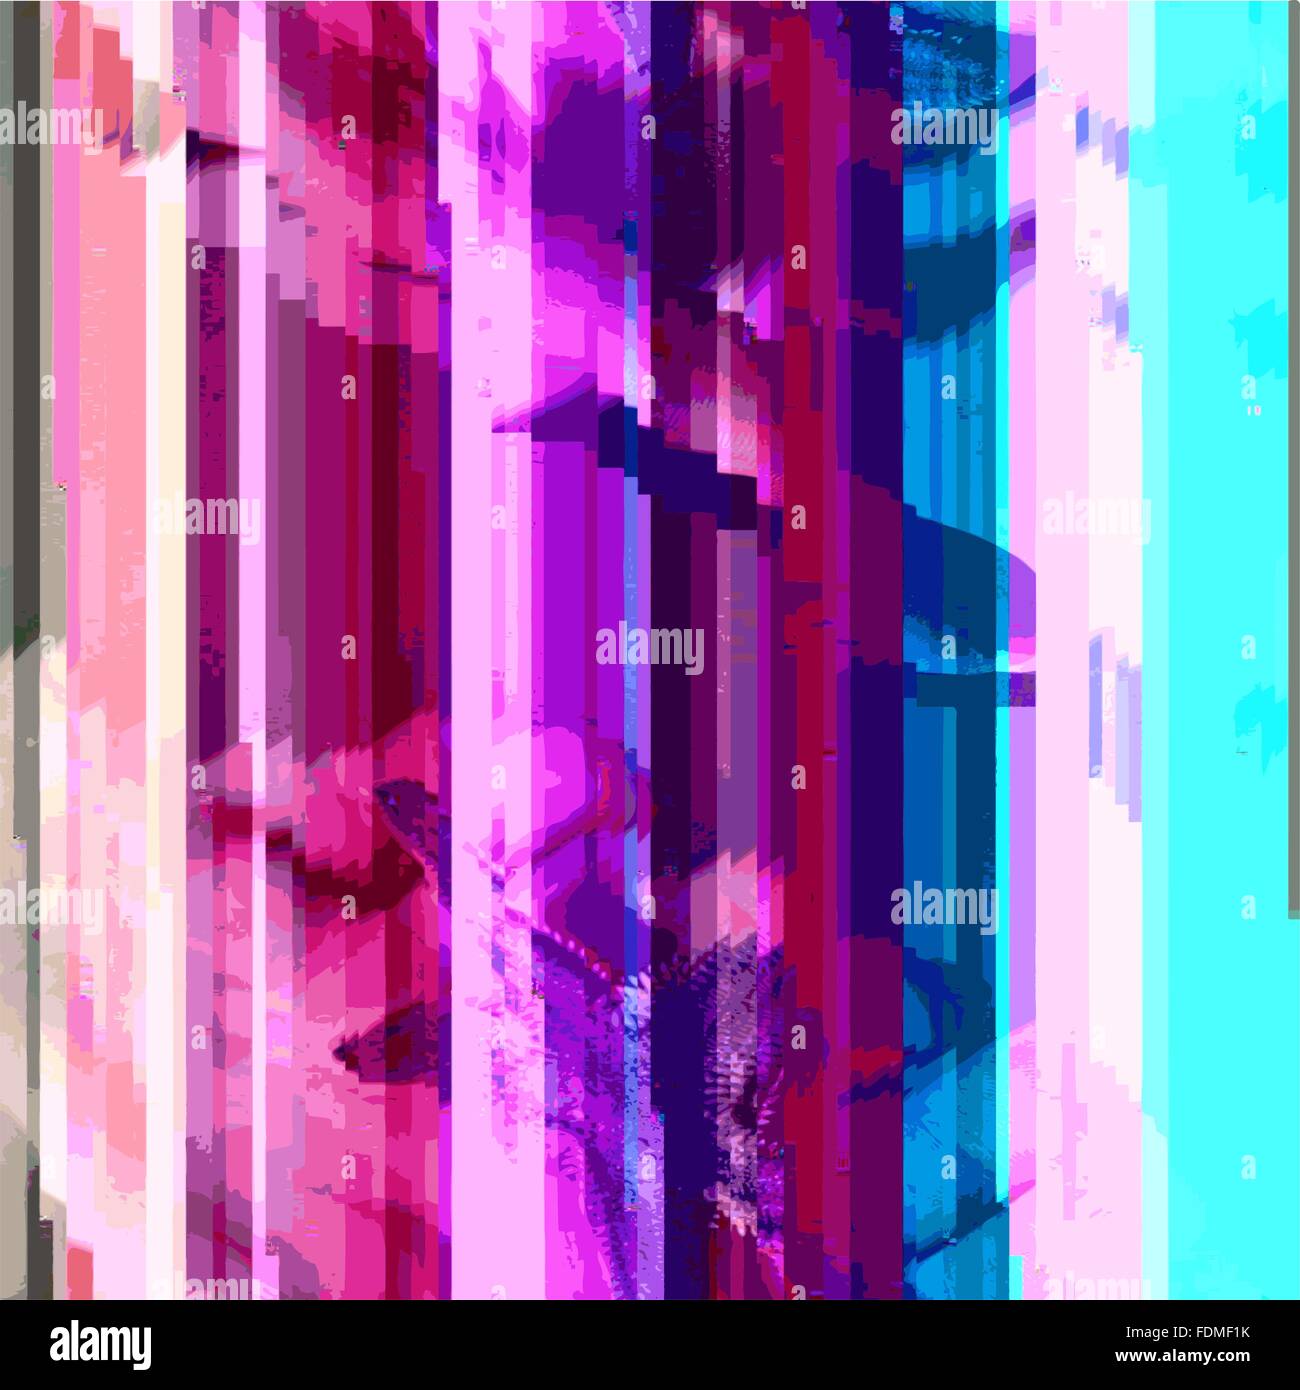 Vektor-leuchtenden Violett Rosa blaugrünen Farben moderne abstrakte digitale vertikale Streifen Glitch Grafikdesign beschädigt Daten Datei staatlich Stock Vektor